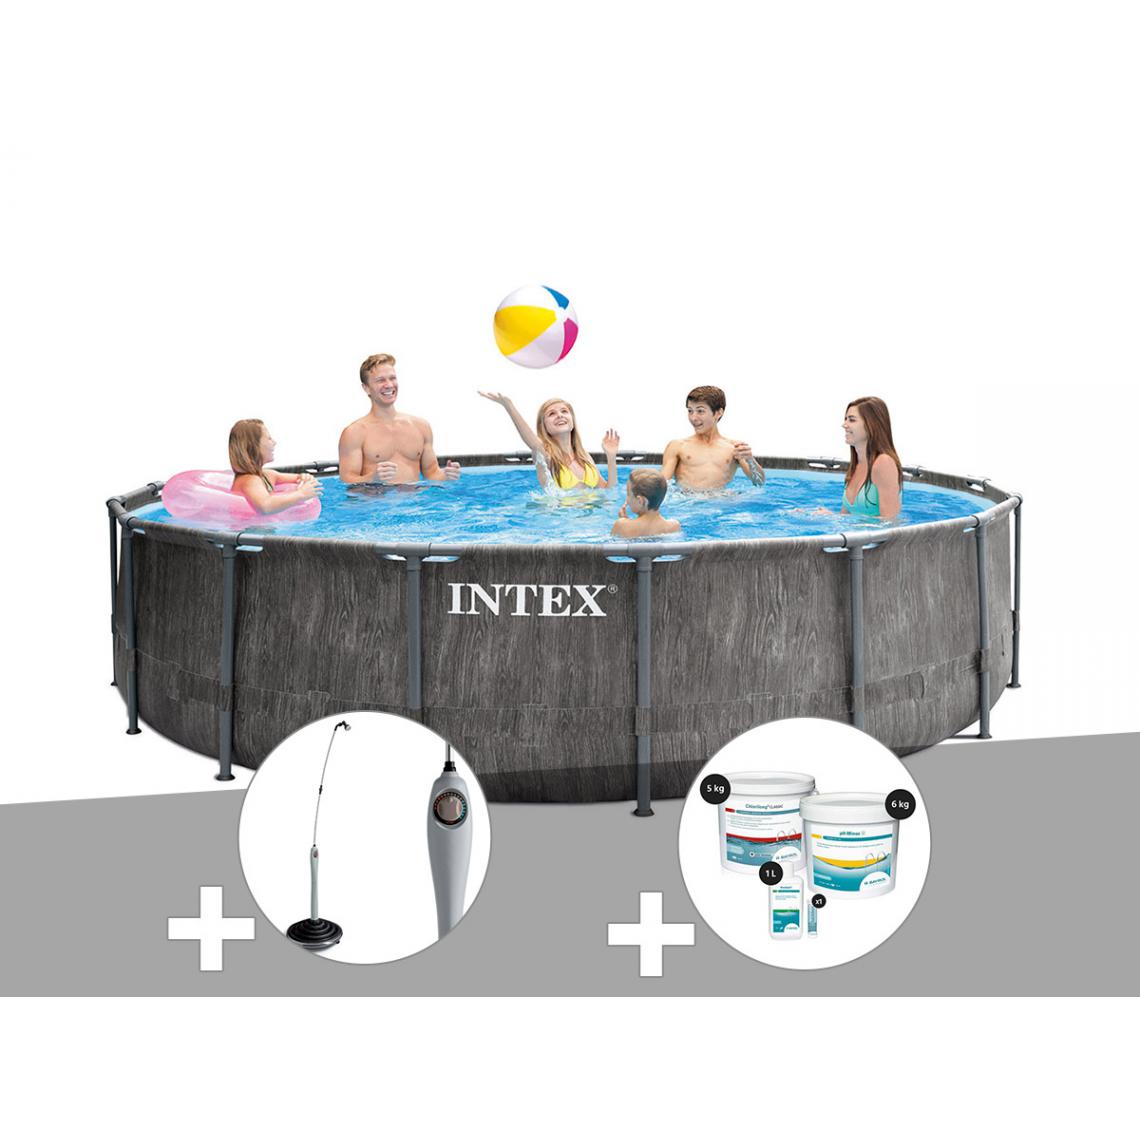 Intex - Kit piscine tubulaire Intex Baltik ronde 4,57 x 1,22 m + Douche solaire + Kit de traitement au chlore - Piscine Tubulaire